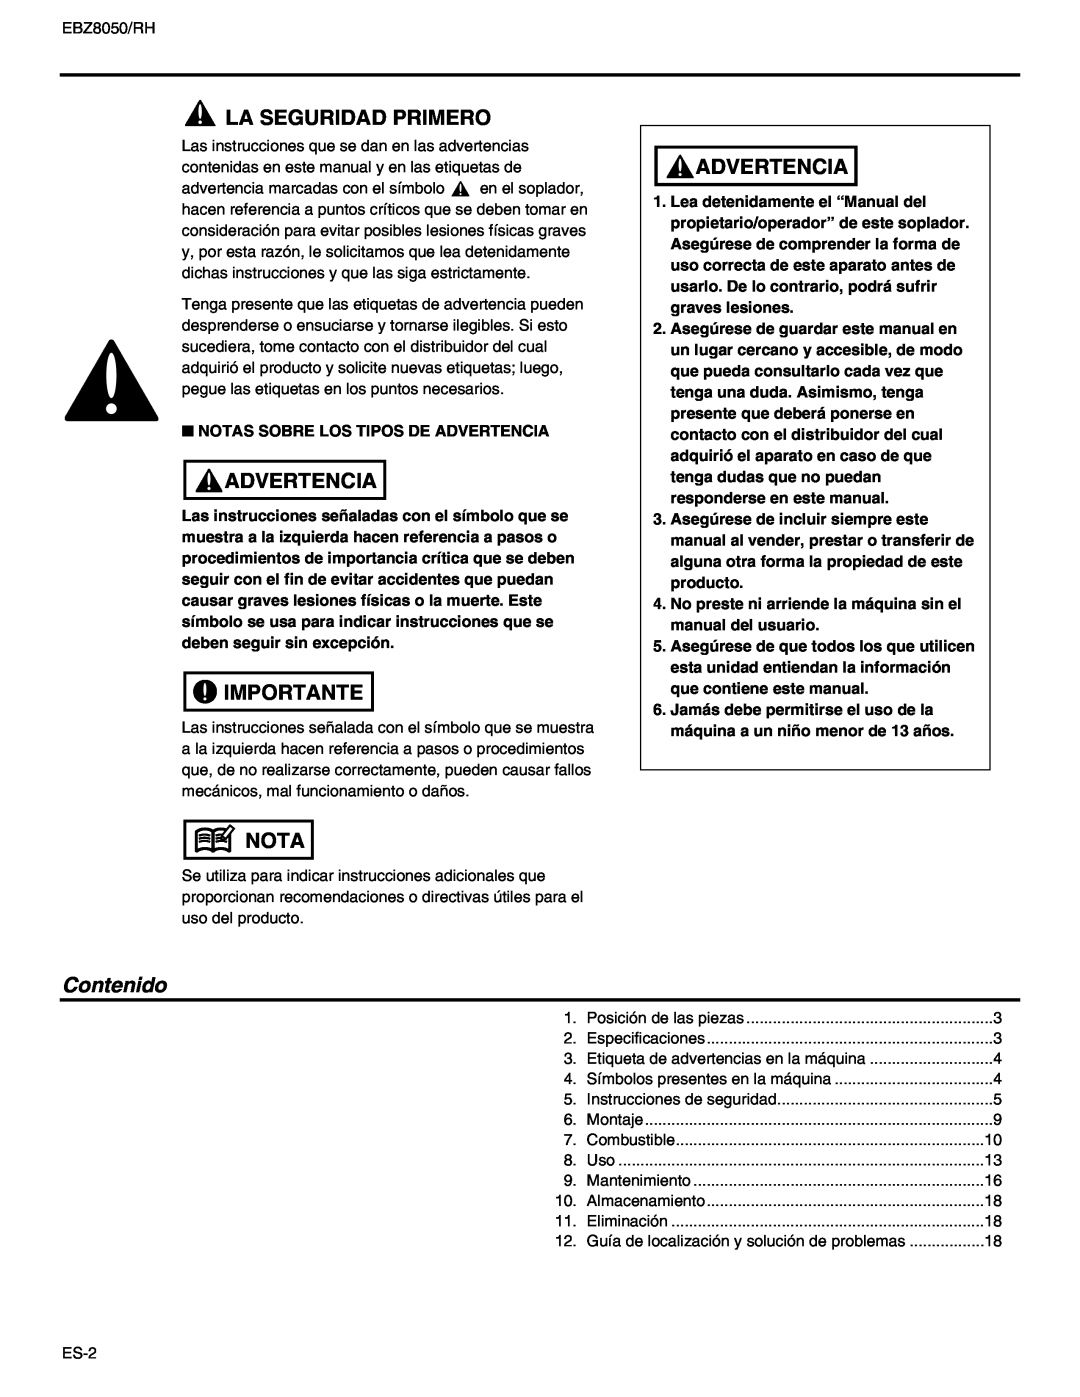 RedMax EBZ8050RH manual La Seguridad Primero, Advertencia, Importante, Nota, Contenido 